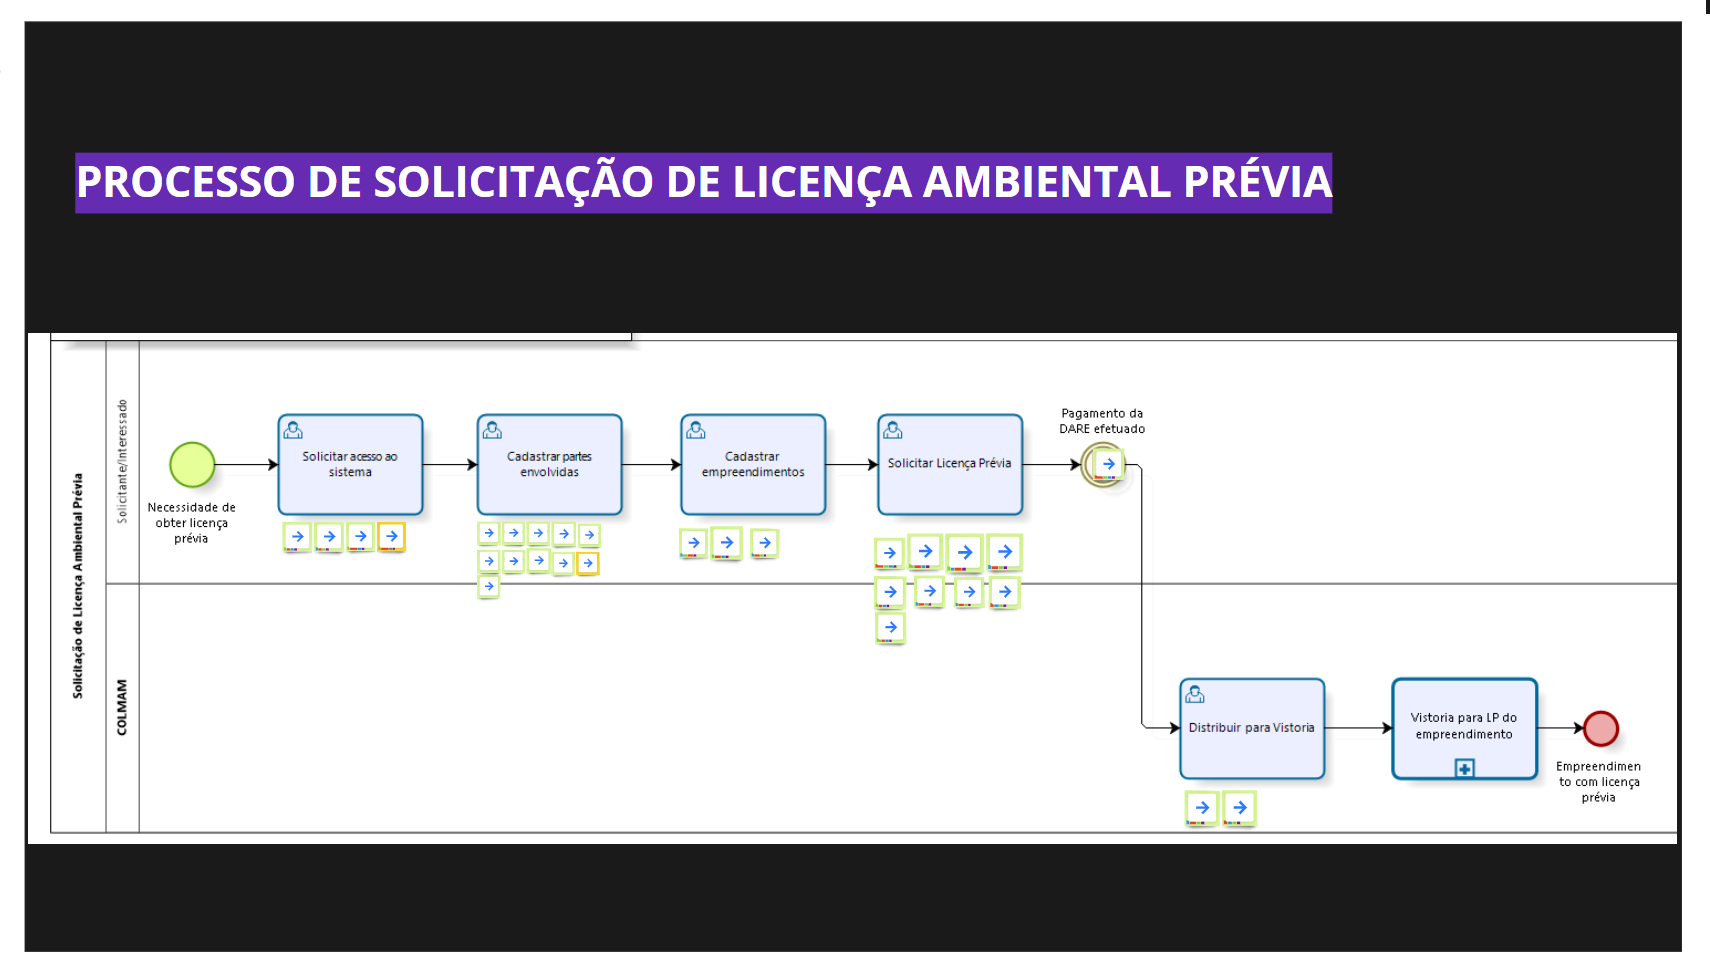 5-1-_features_-_processo_de_solicitacao_de_licenca_ambiental_previa.png